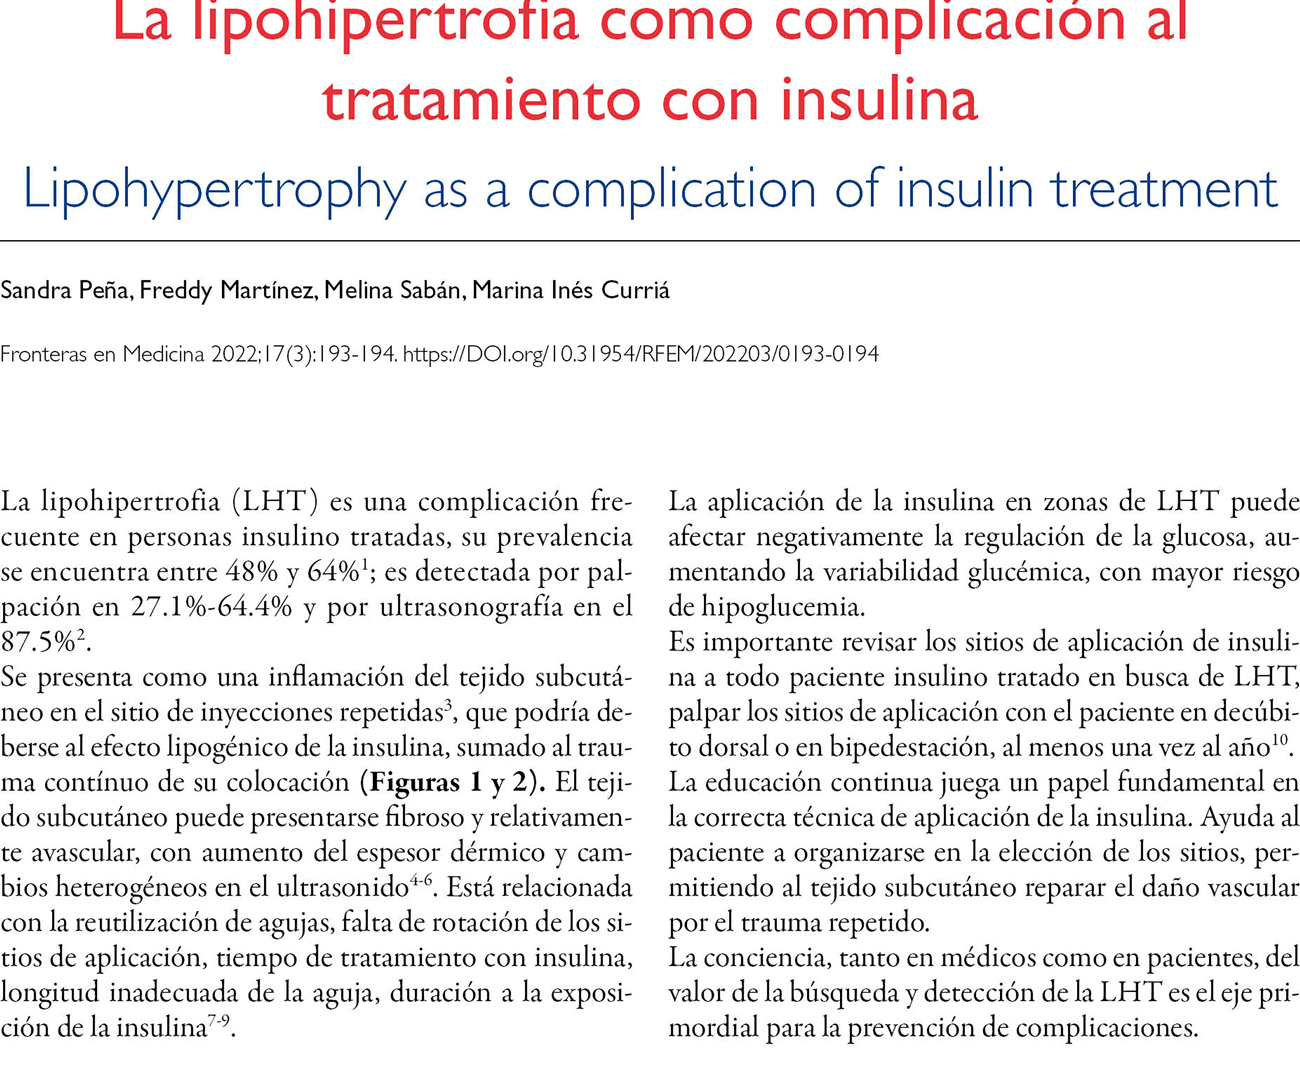 La lipohipertrofia como complicación al tratamiento con insulina